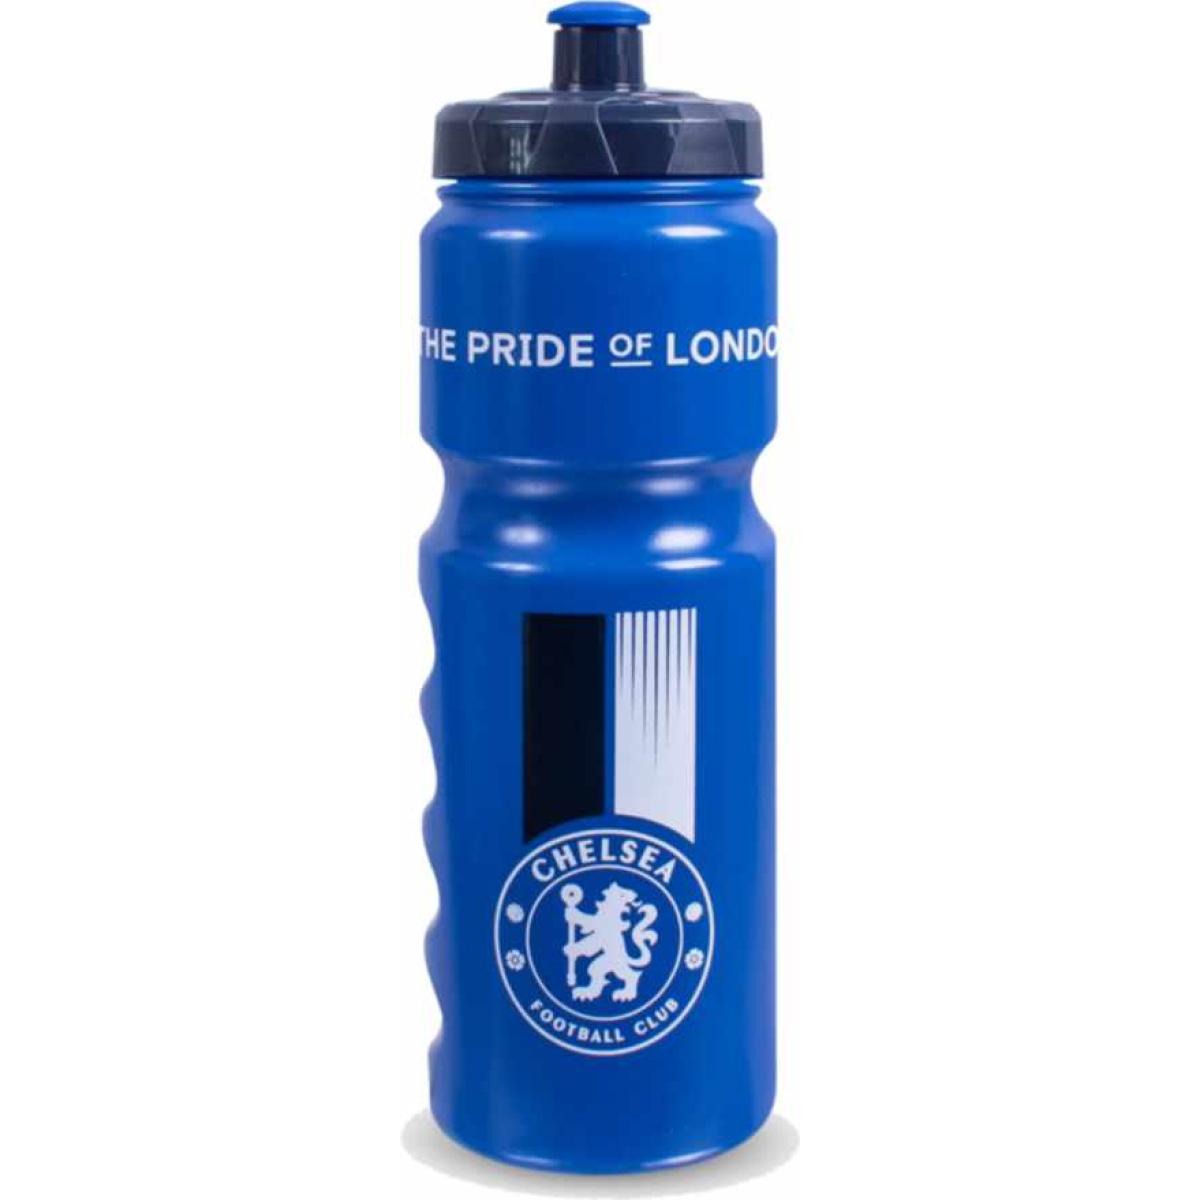 Chelsea Plastic Bottle, Football Souvenirs, Souvenirs